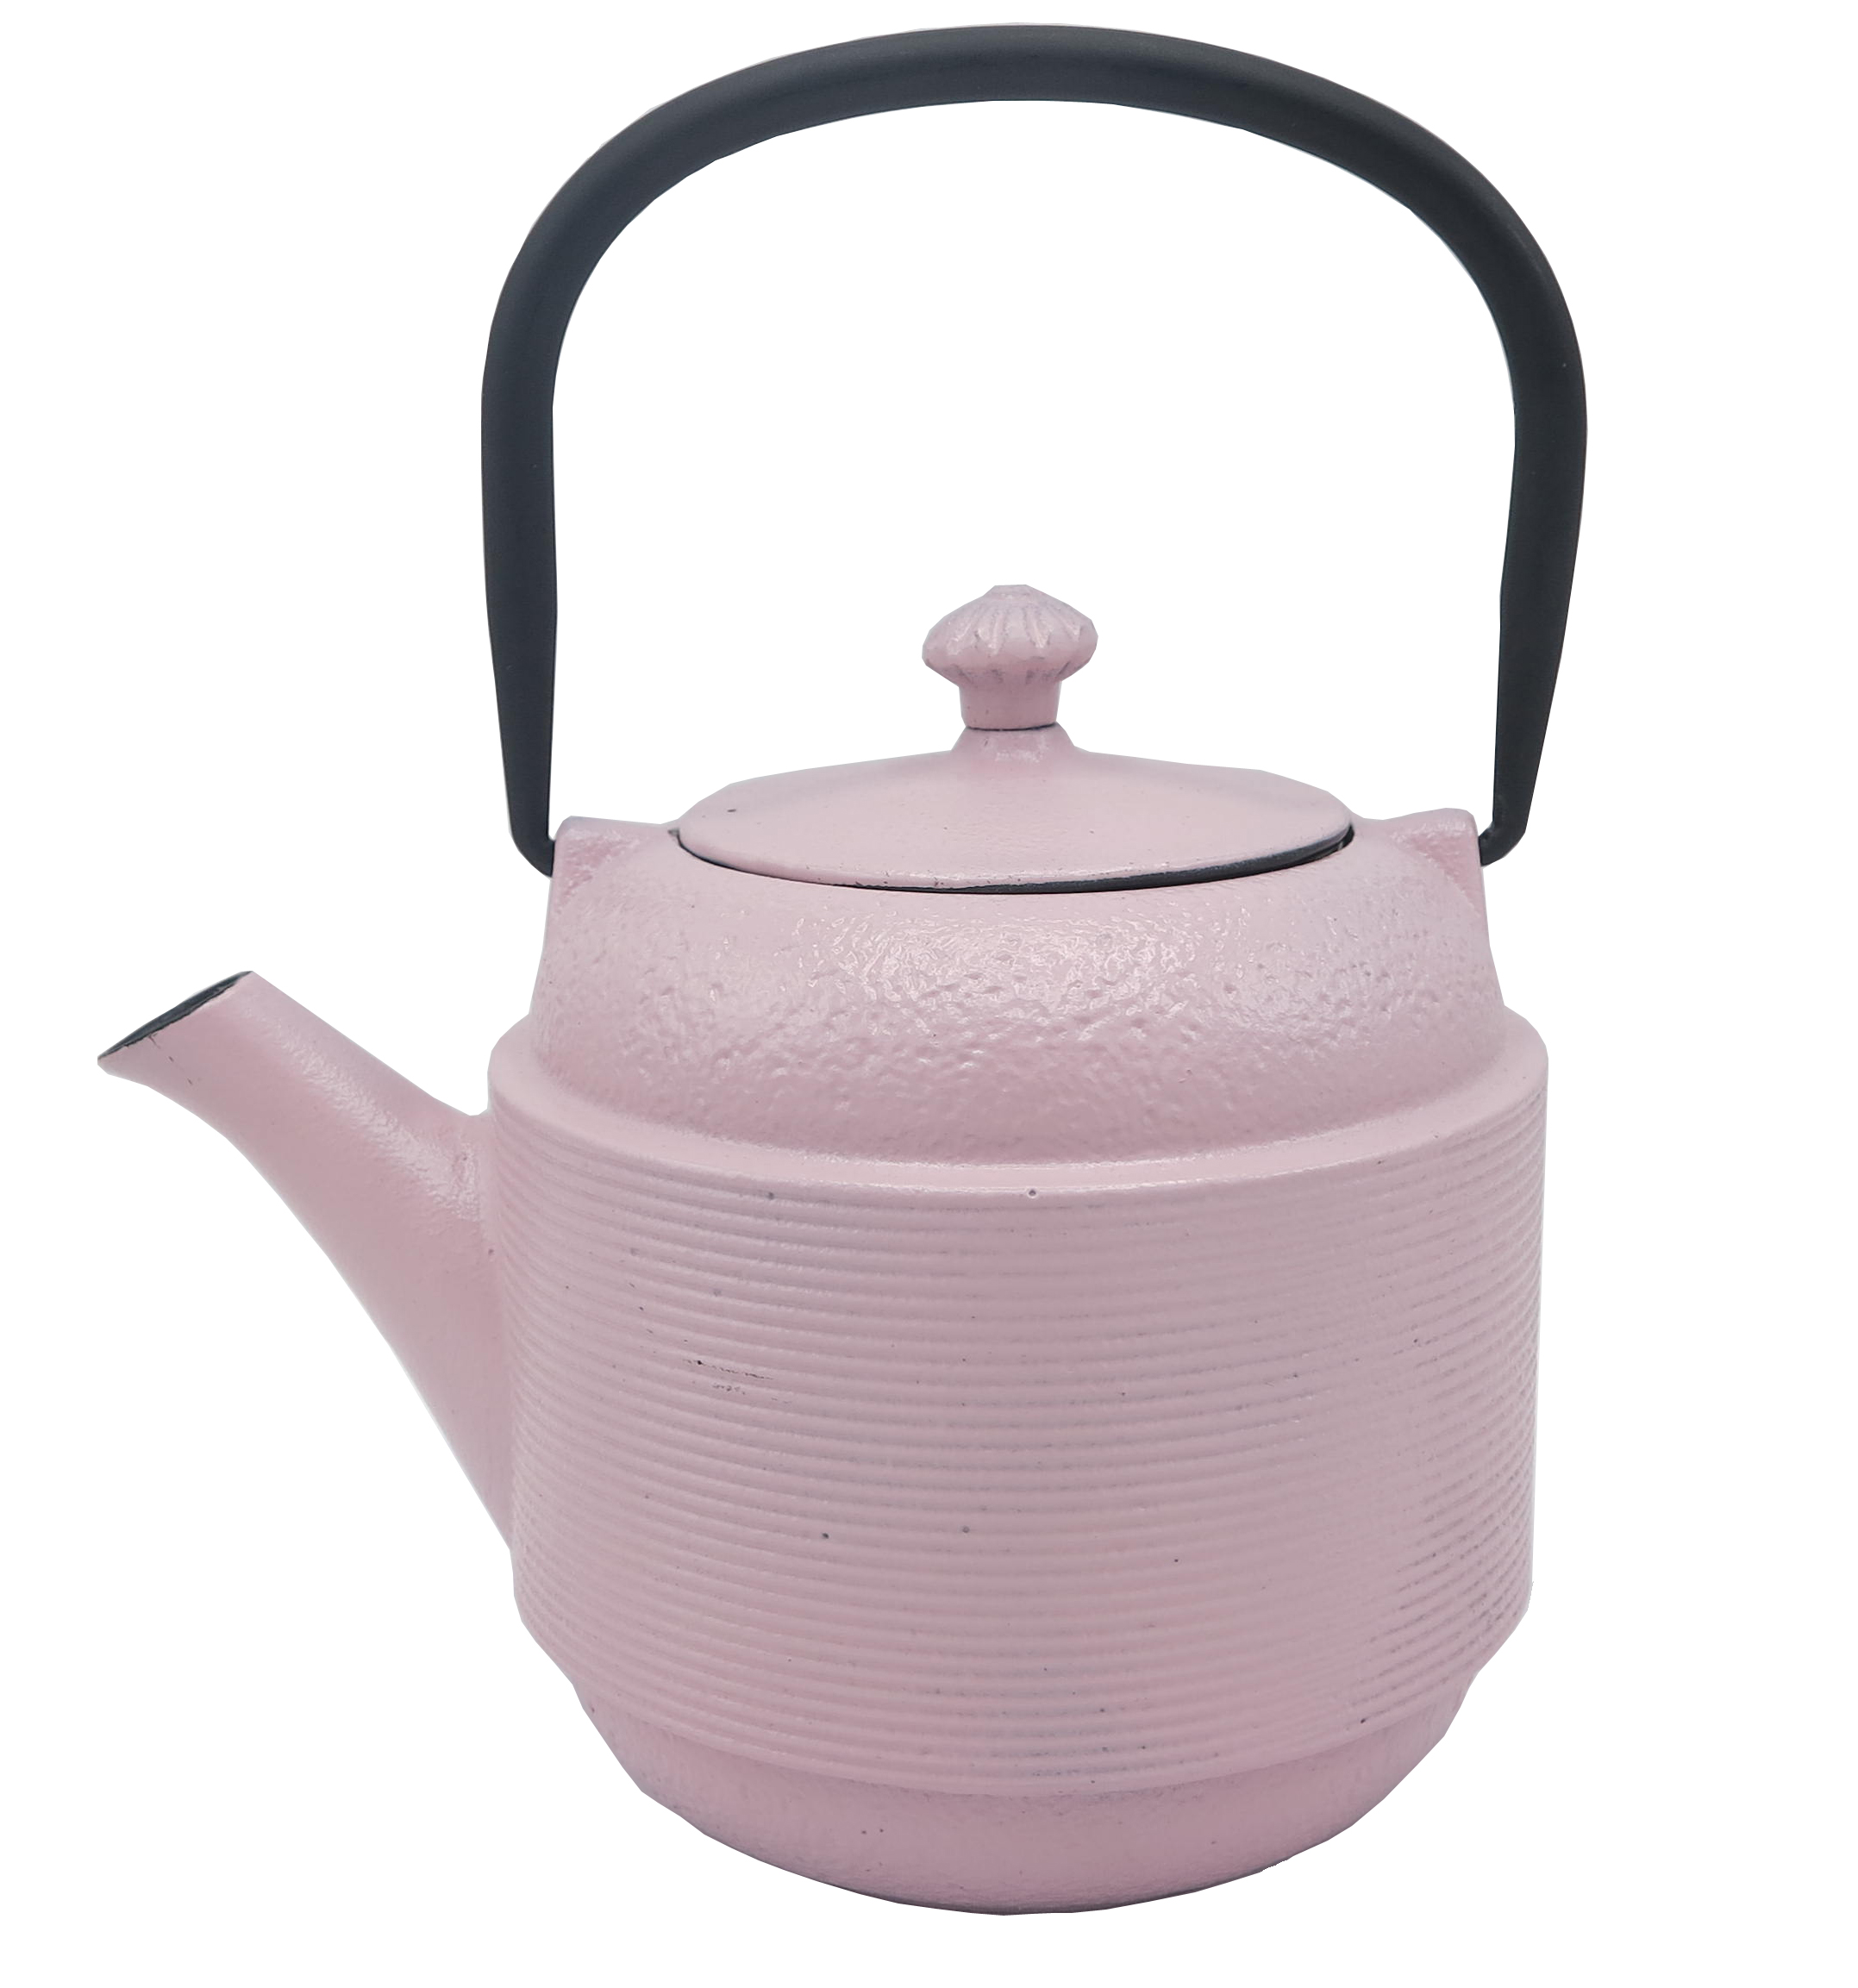 غلاية شاي معدنية 800 مل إبريق شاي مطلي بالمينا من الحديد الزهر